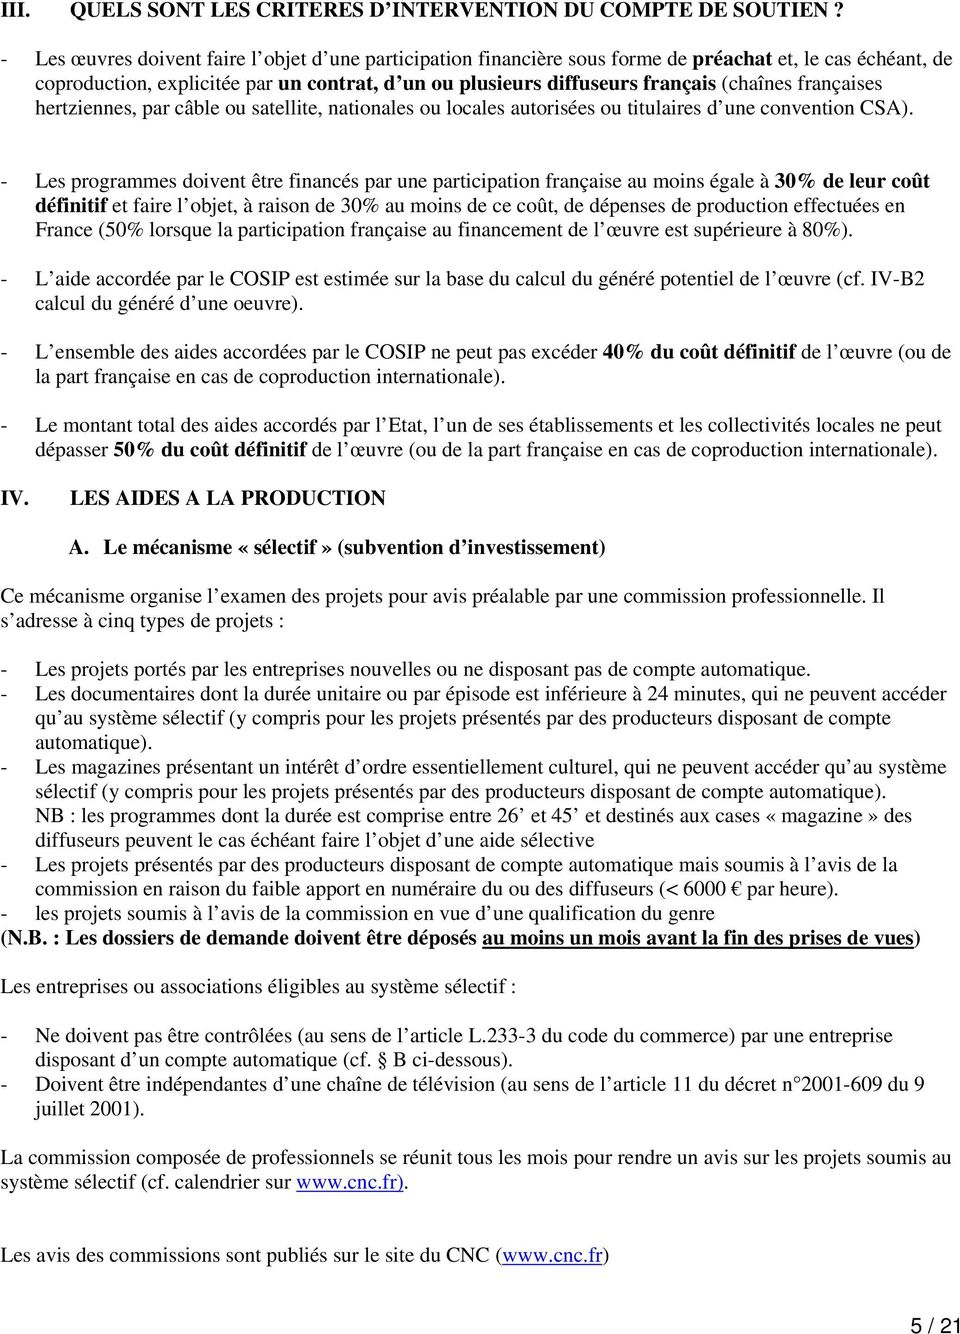 françaises hertziennes, par câble ou satellite, nationales ou locales autorisées ou titulaires d une convention CSA).